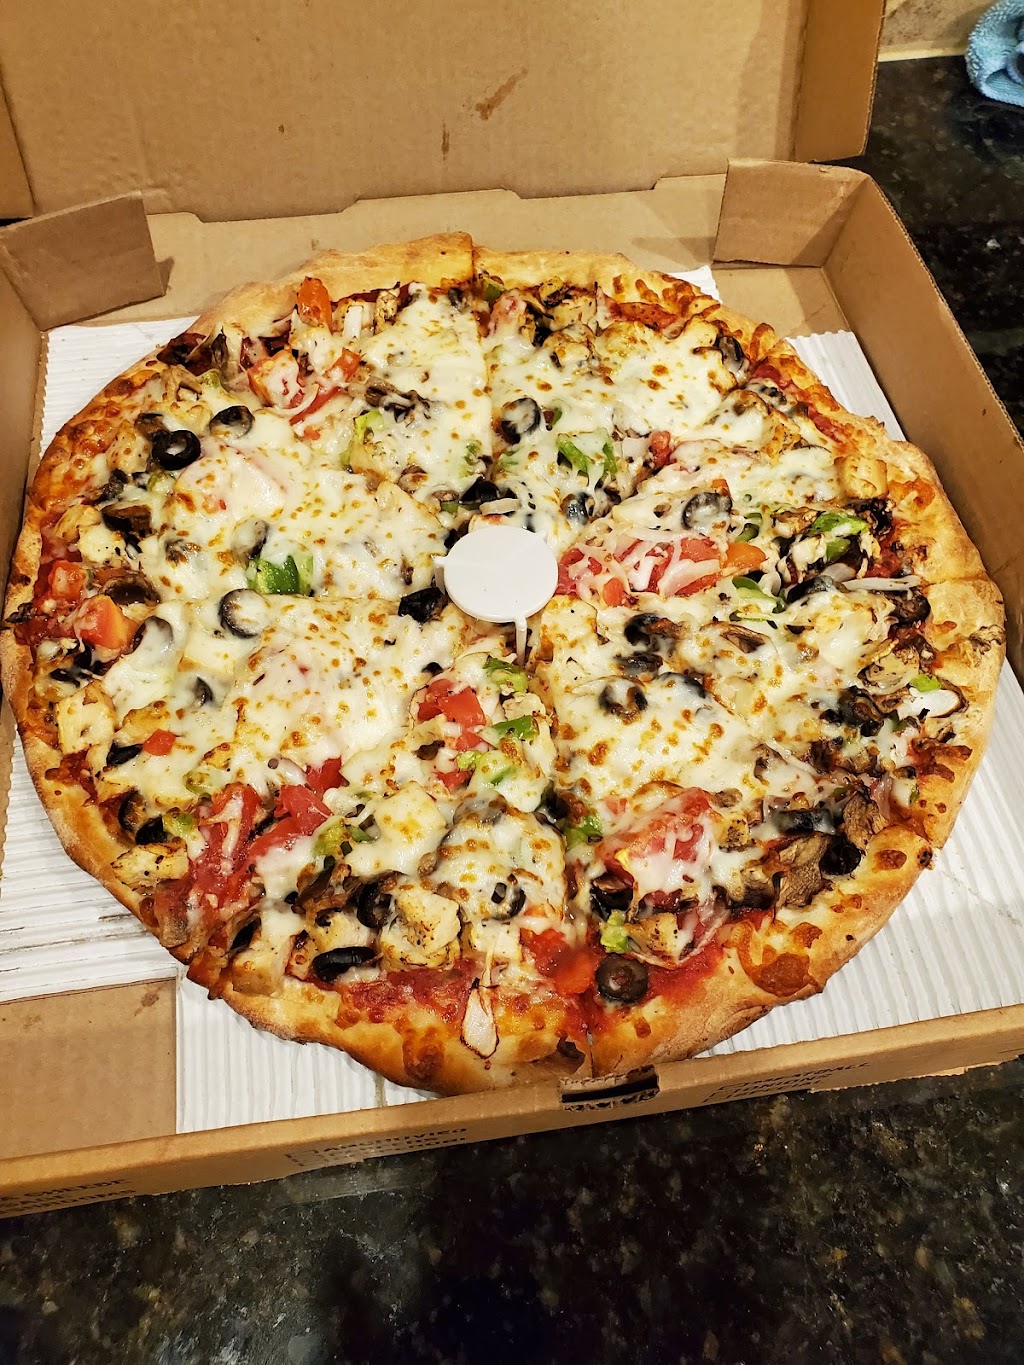 Doubles Pizza | 9850 Nesbit Ferry Rd # 5, Alpharetta, GA 30022, USA | Phone: (770) 642-1818